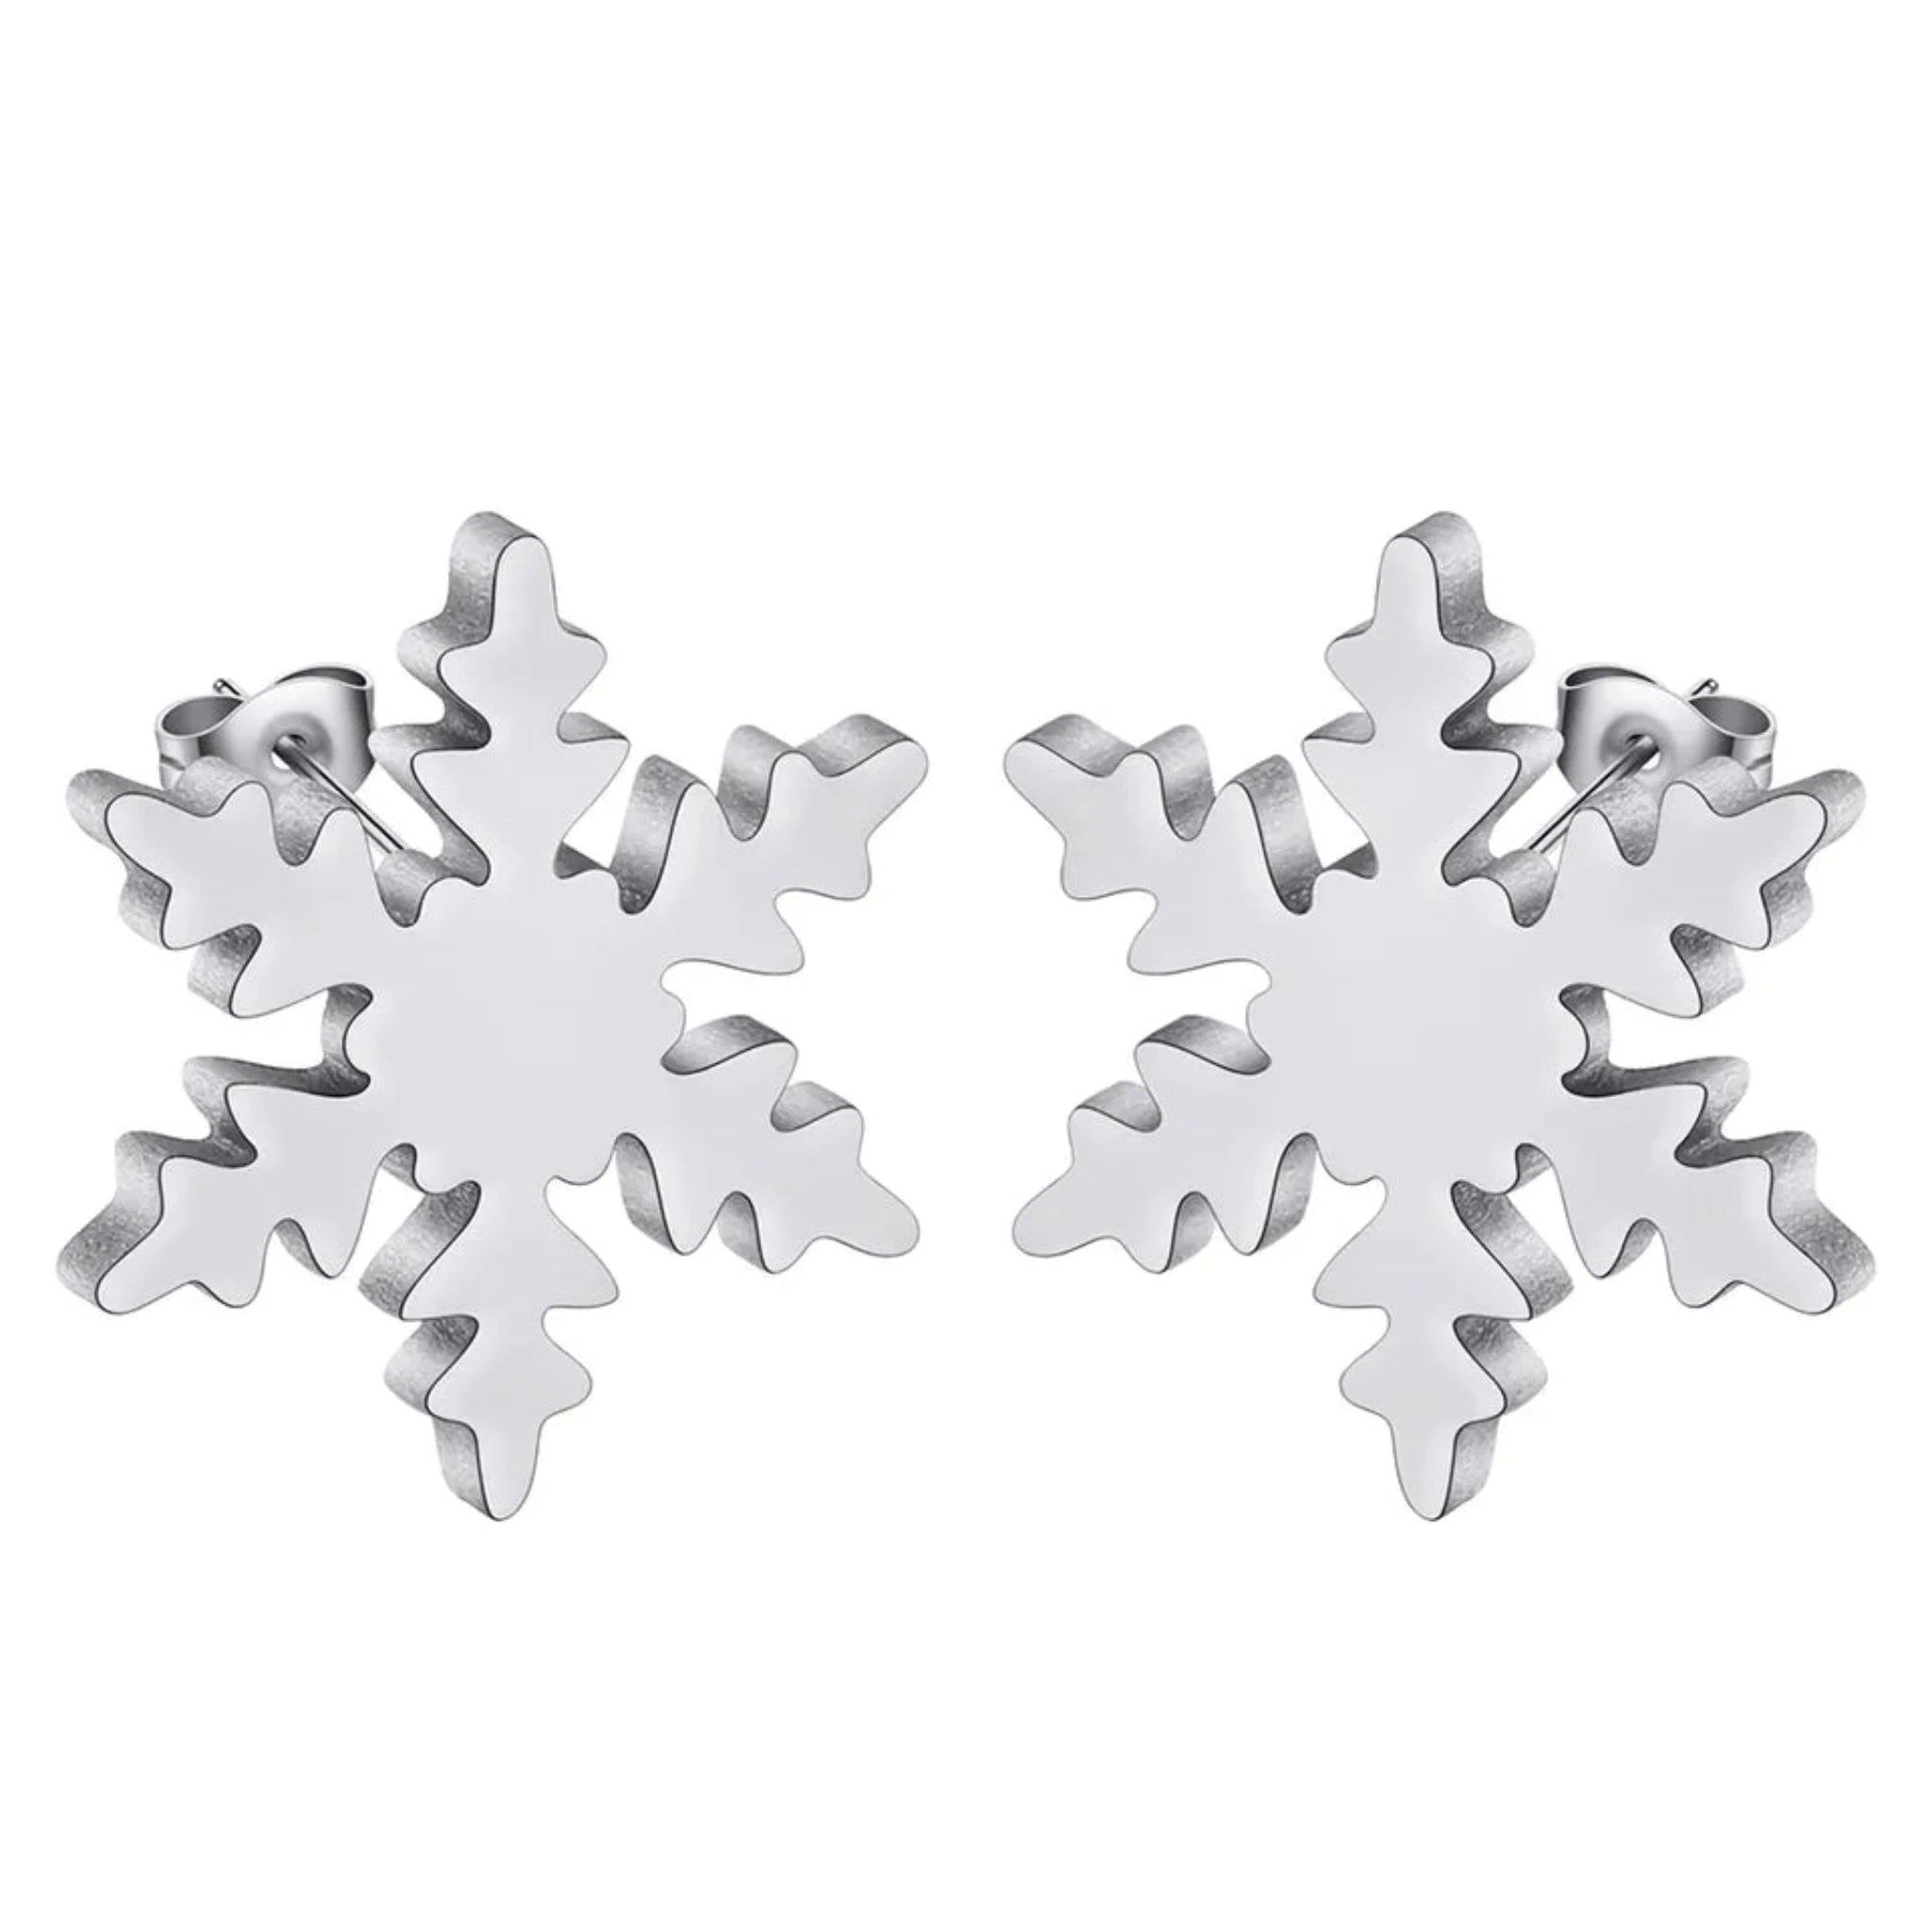 Snowflake Stainless Steel Earrings